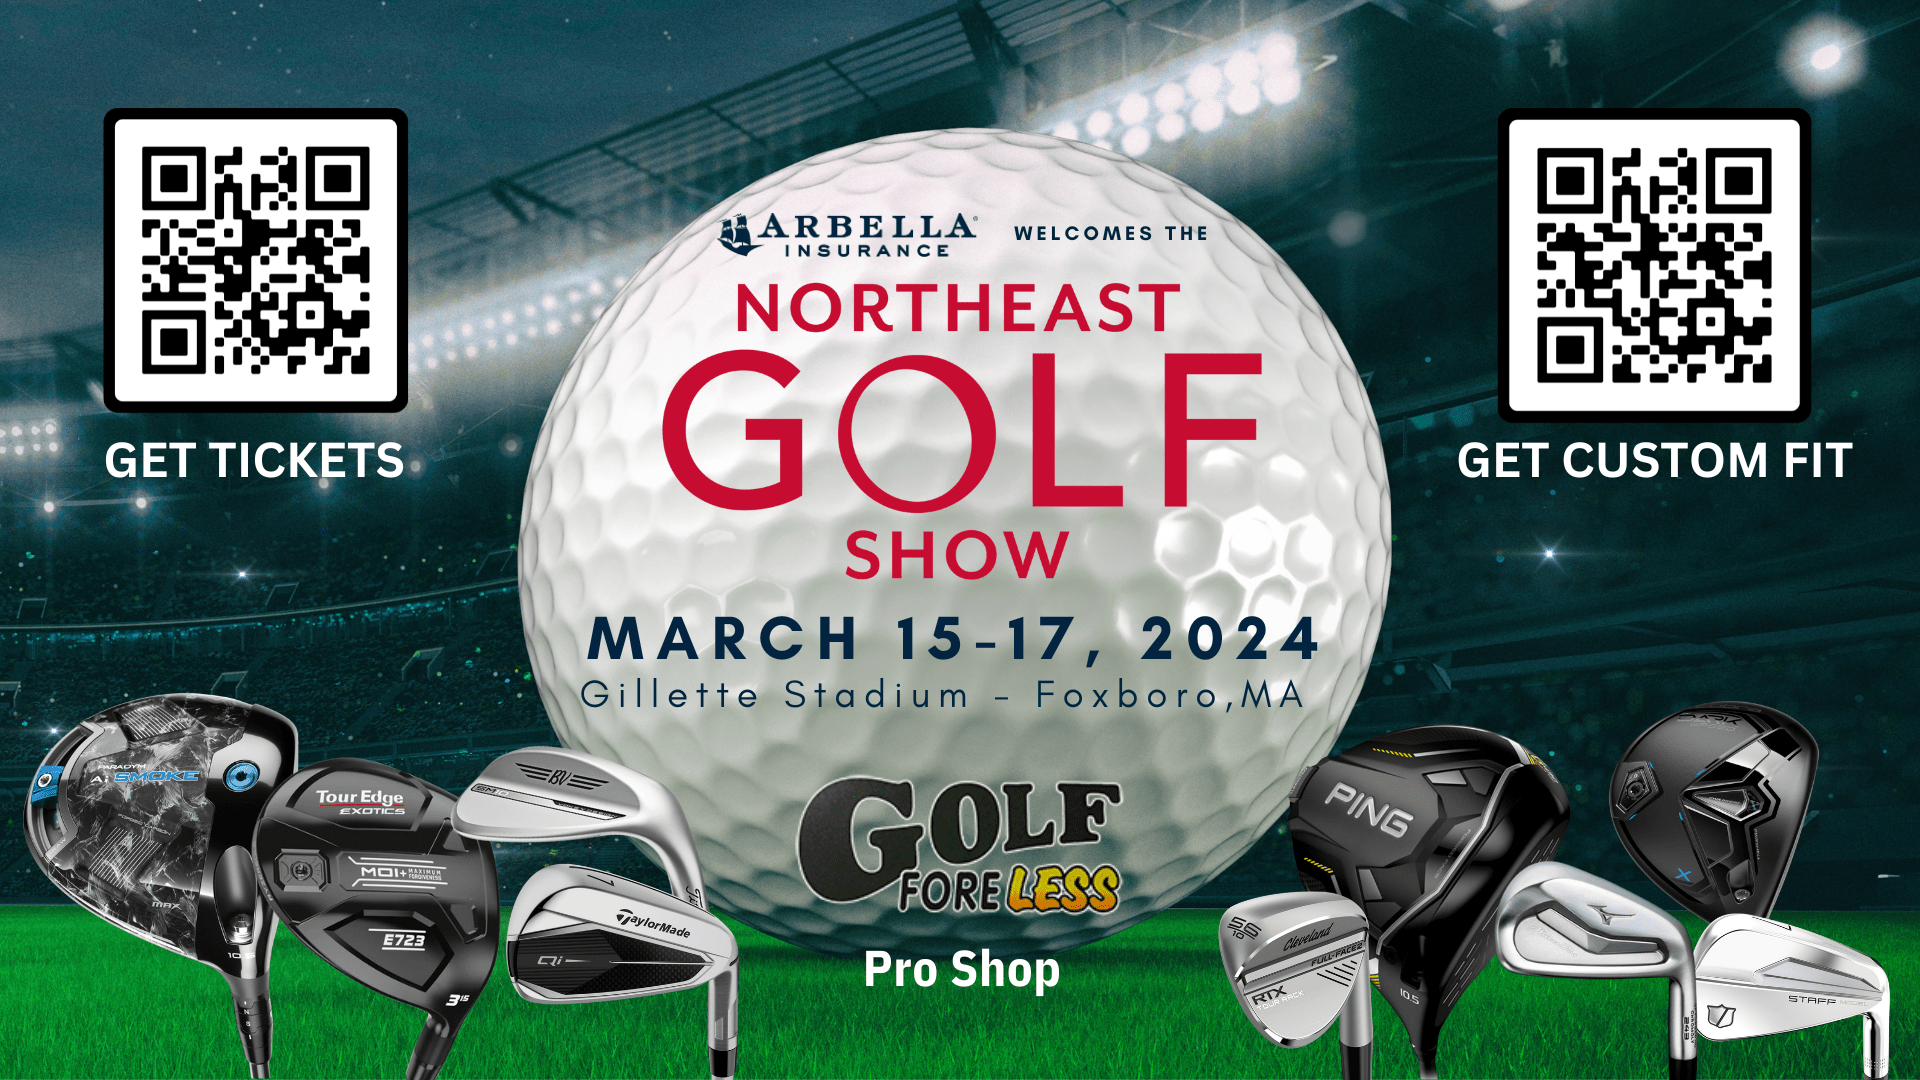 Northeast Golf Show, March 15-17, 2024 - Foxboro, MA - Gillette Stadium